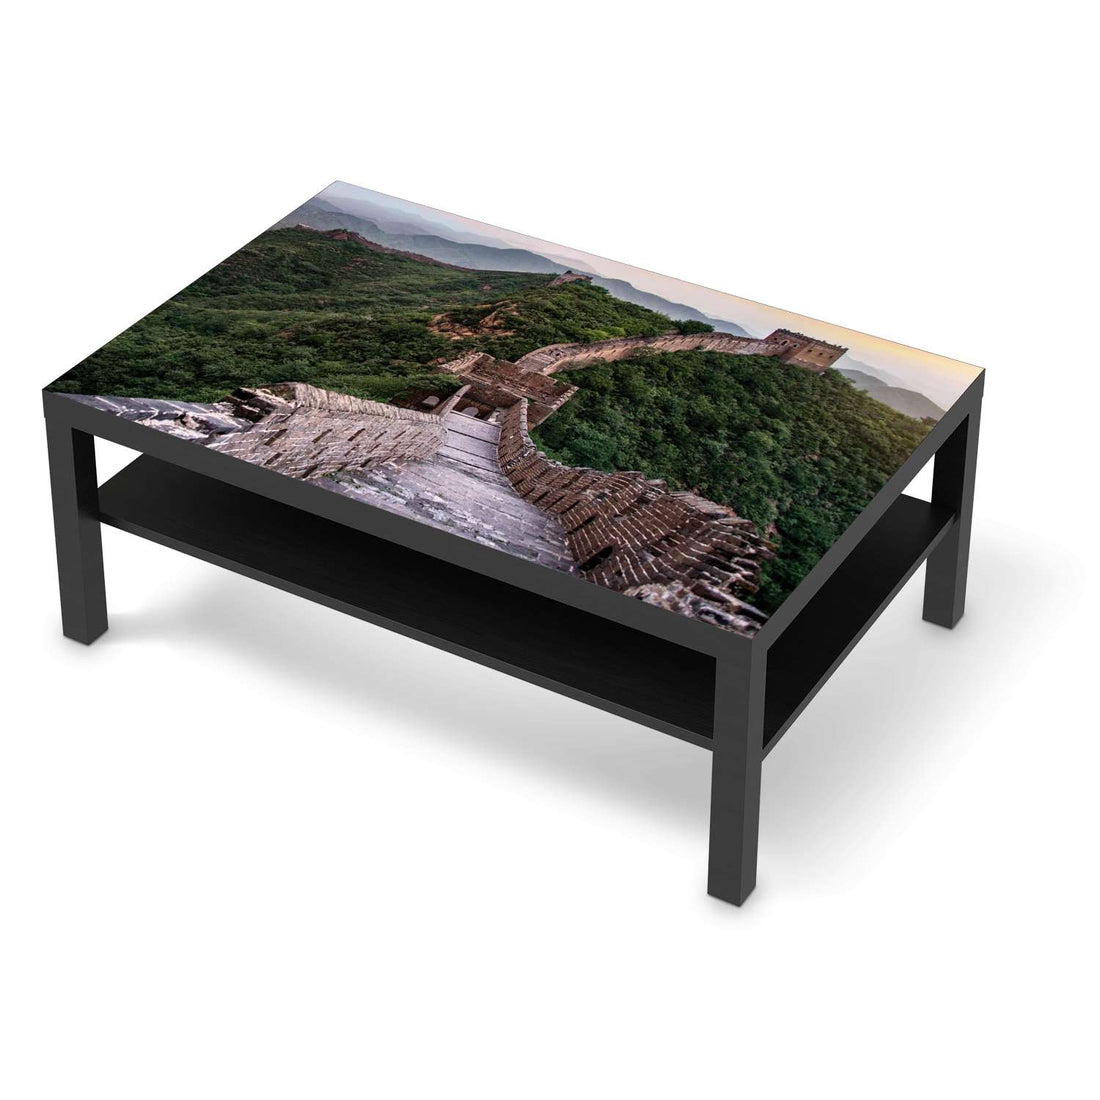 Klebefolie The Great Wall - IKEA Lack Tisch 118x78 cm - schwarz